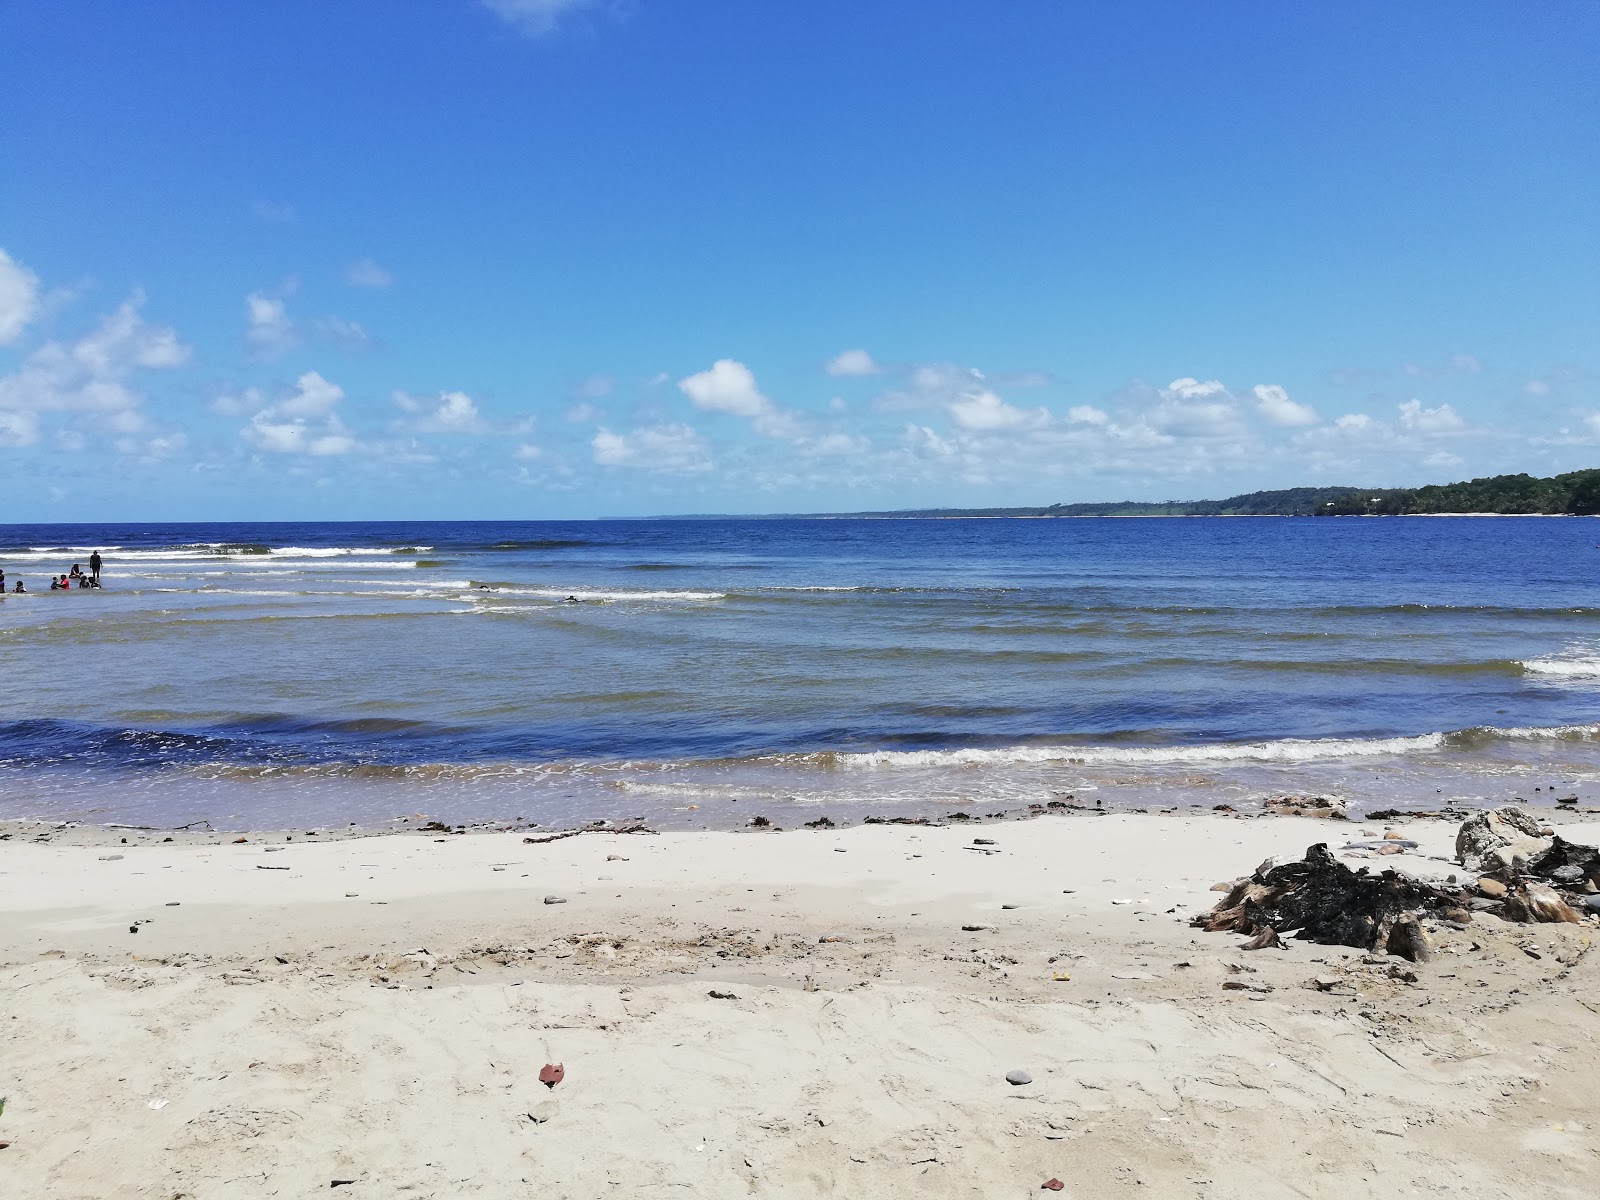 Salybia beach'in fotoğrafı geniş plaj ile birlikte